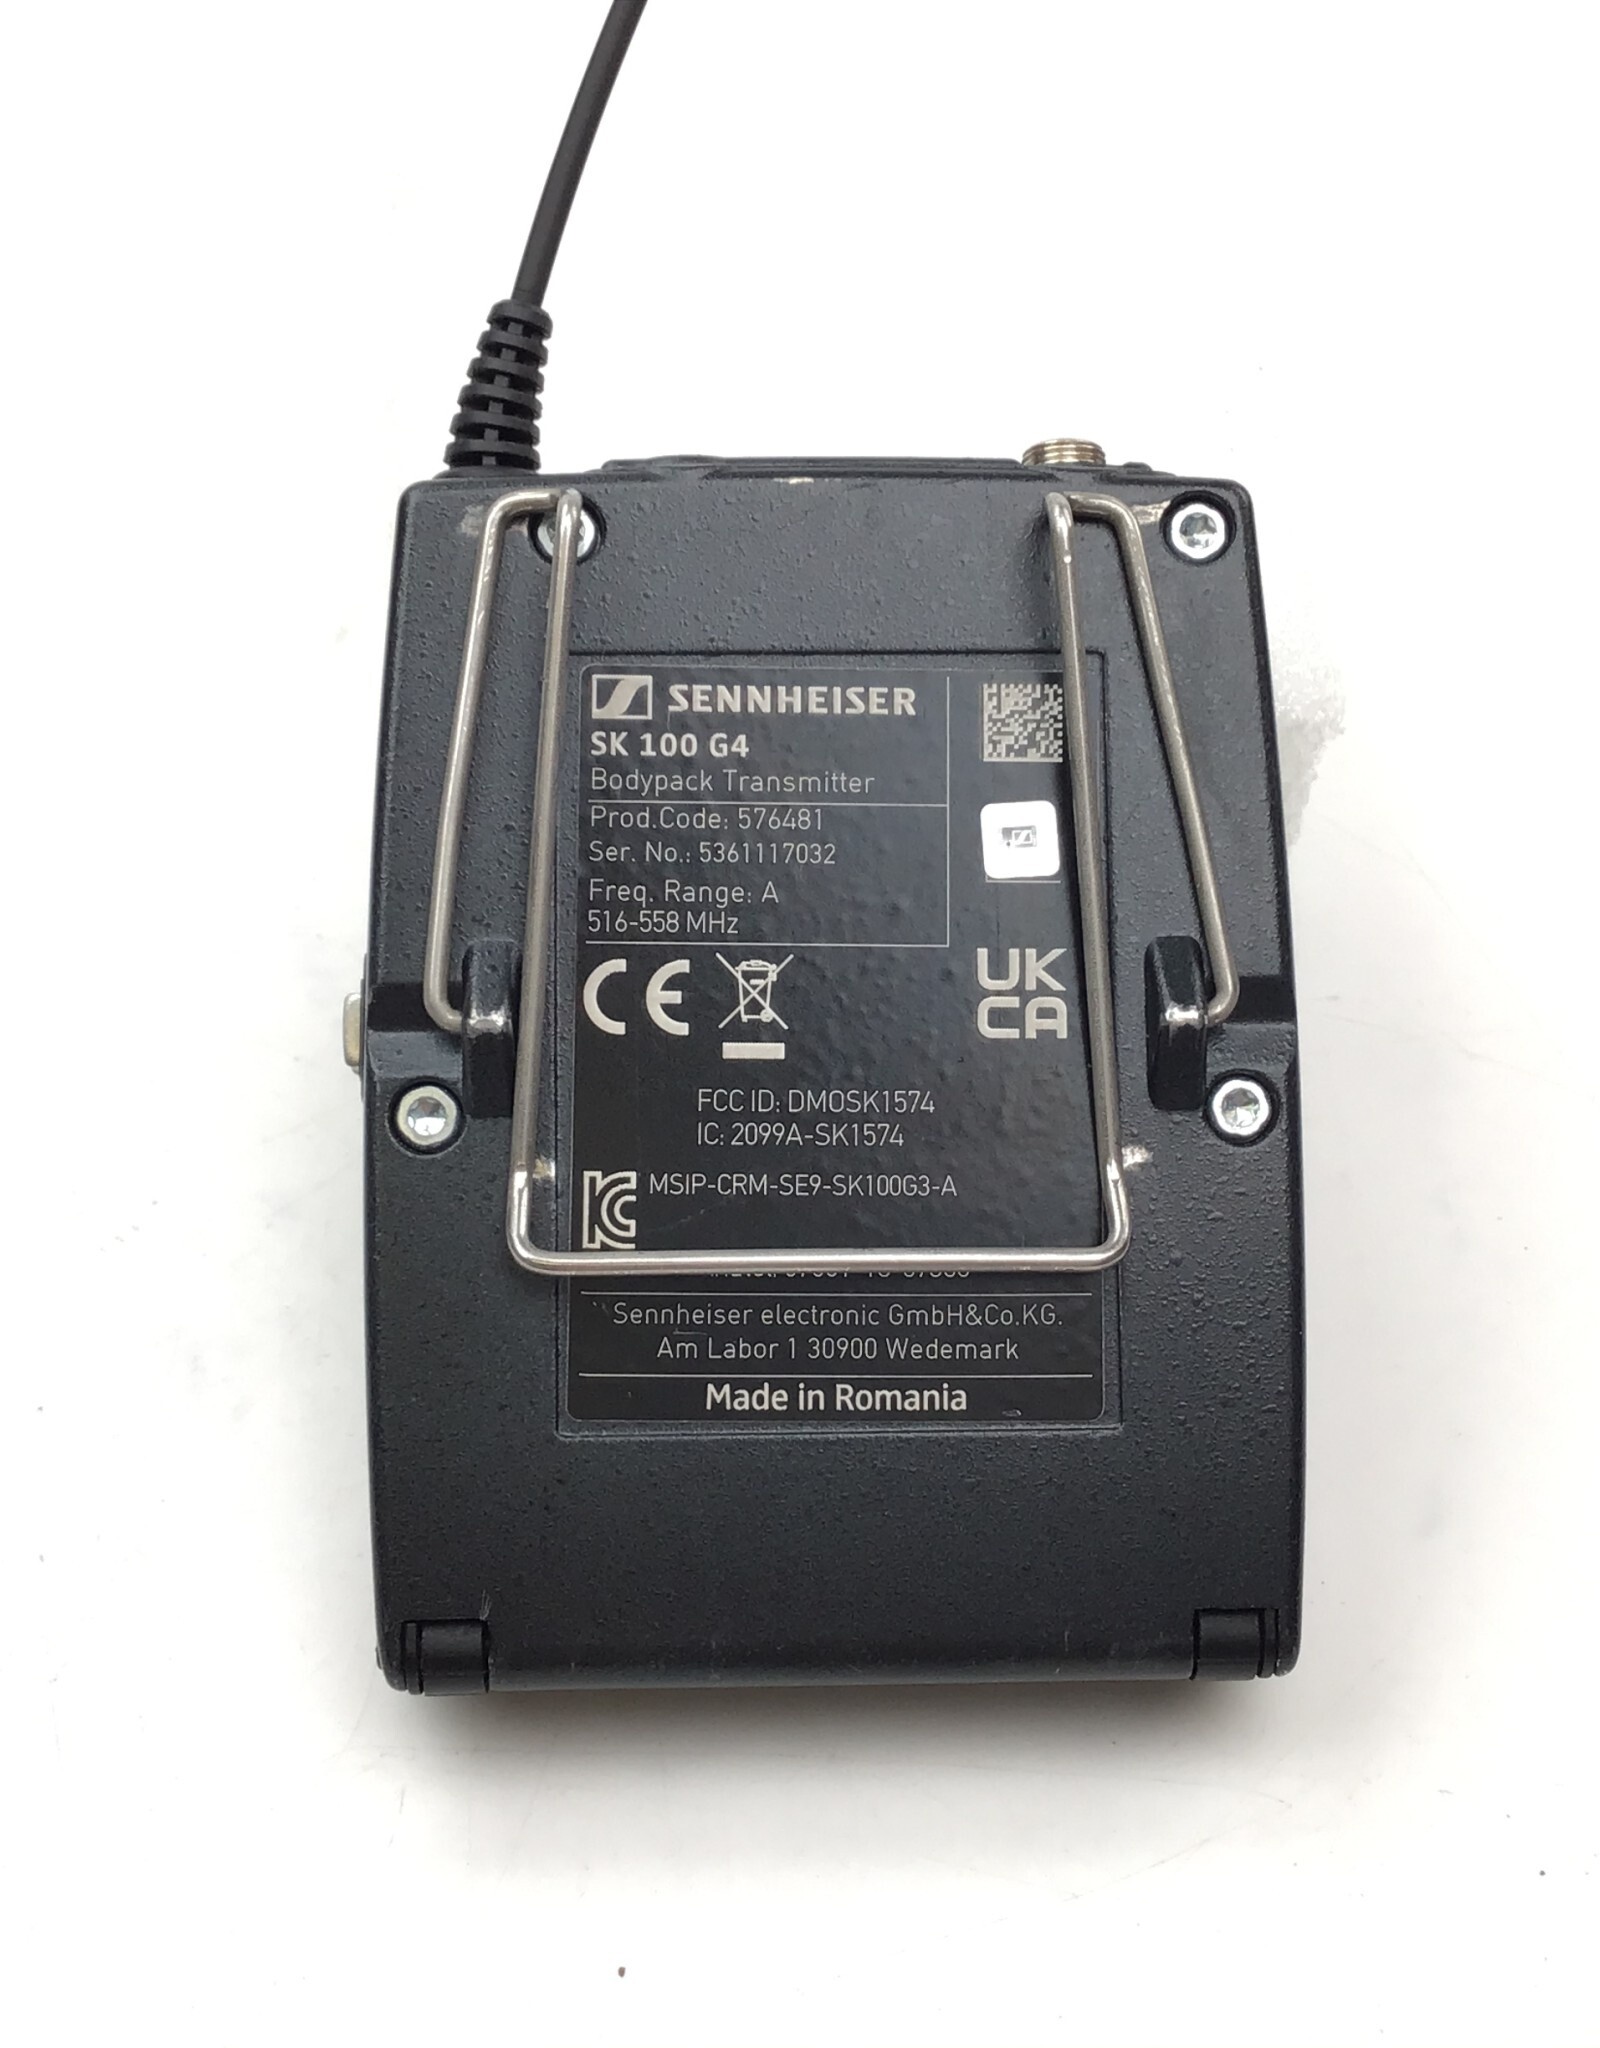 SENNHEISER Sennheiser SK 100 G4 Bodypack Transmitter Freq A 516-558MHz Used Good